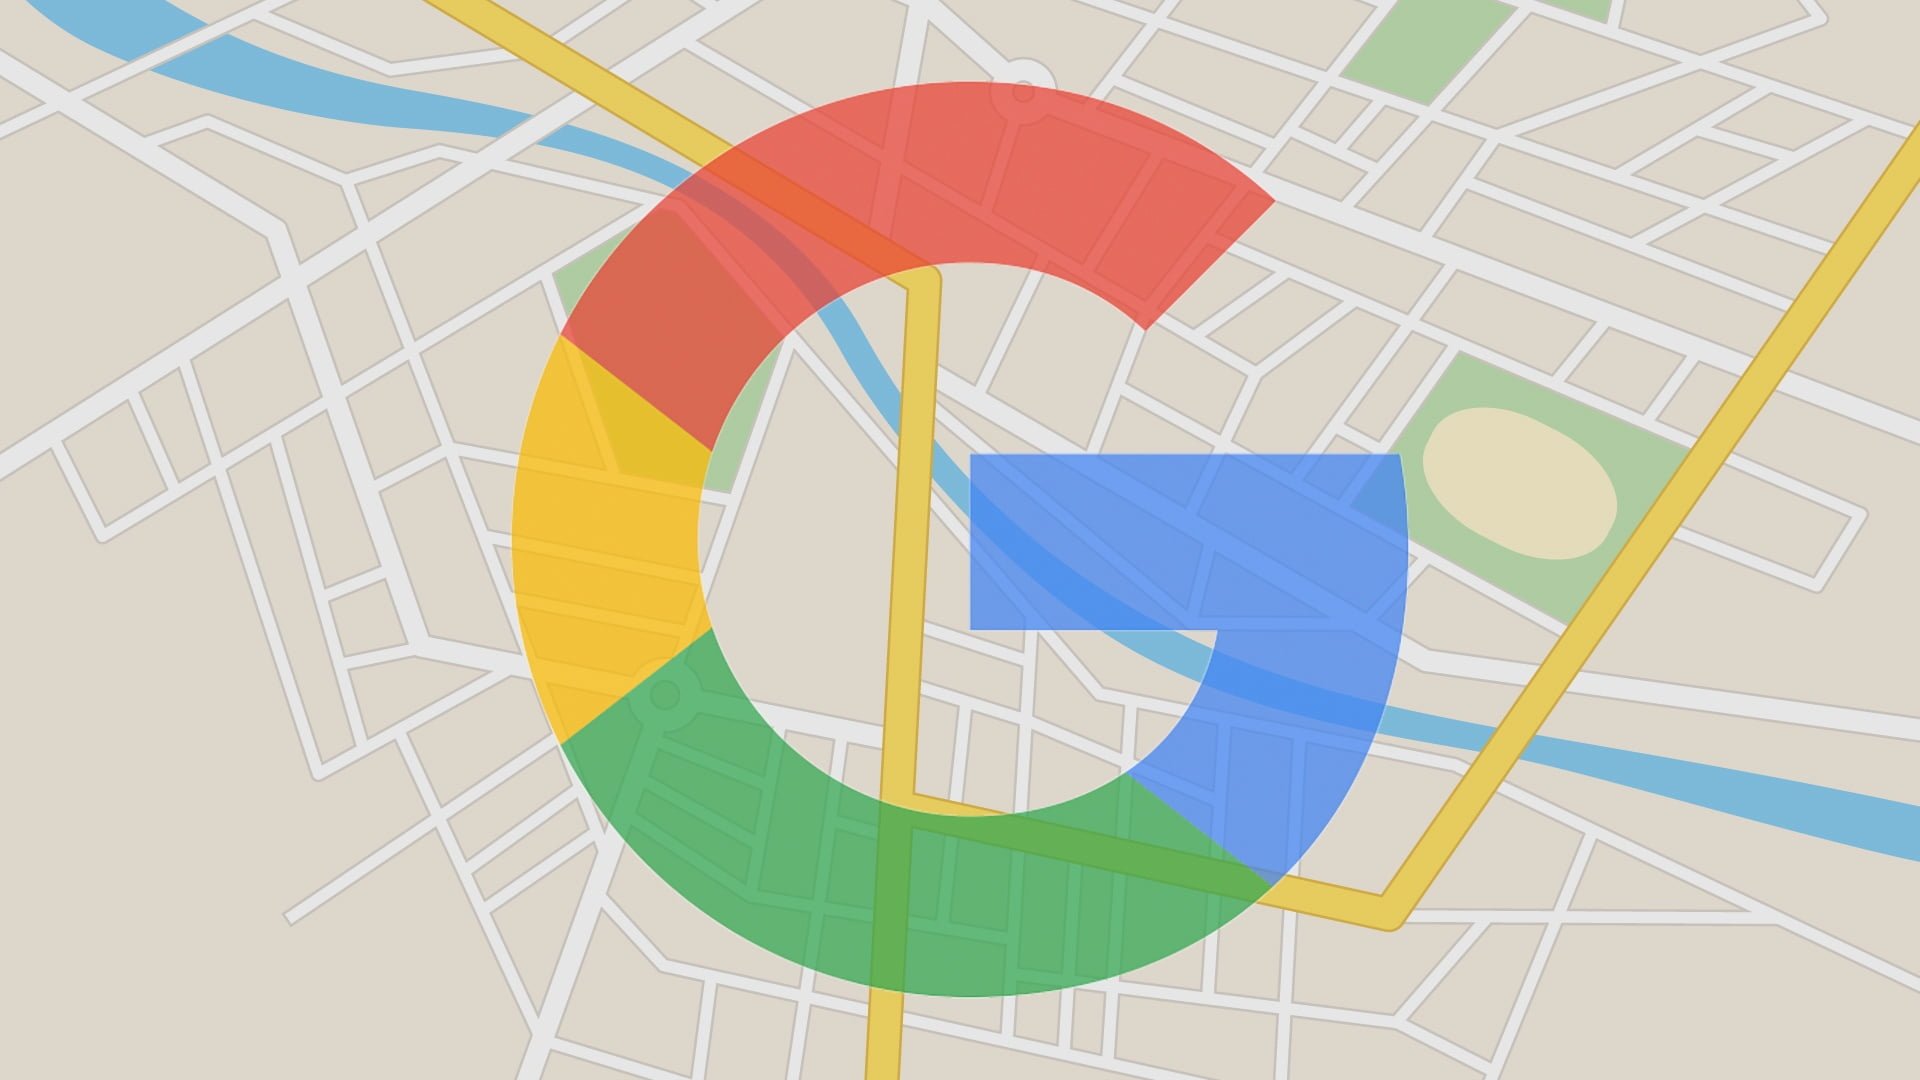 Novidades nos anúncios no Google Maps! Por quê você deveria ficar empolgado?